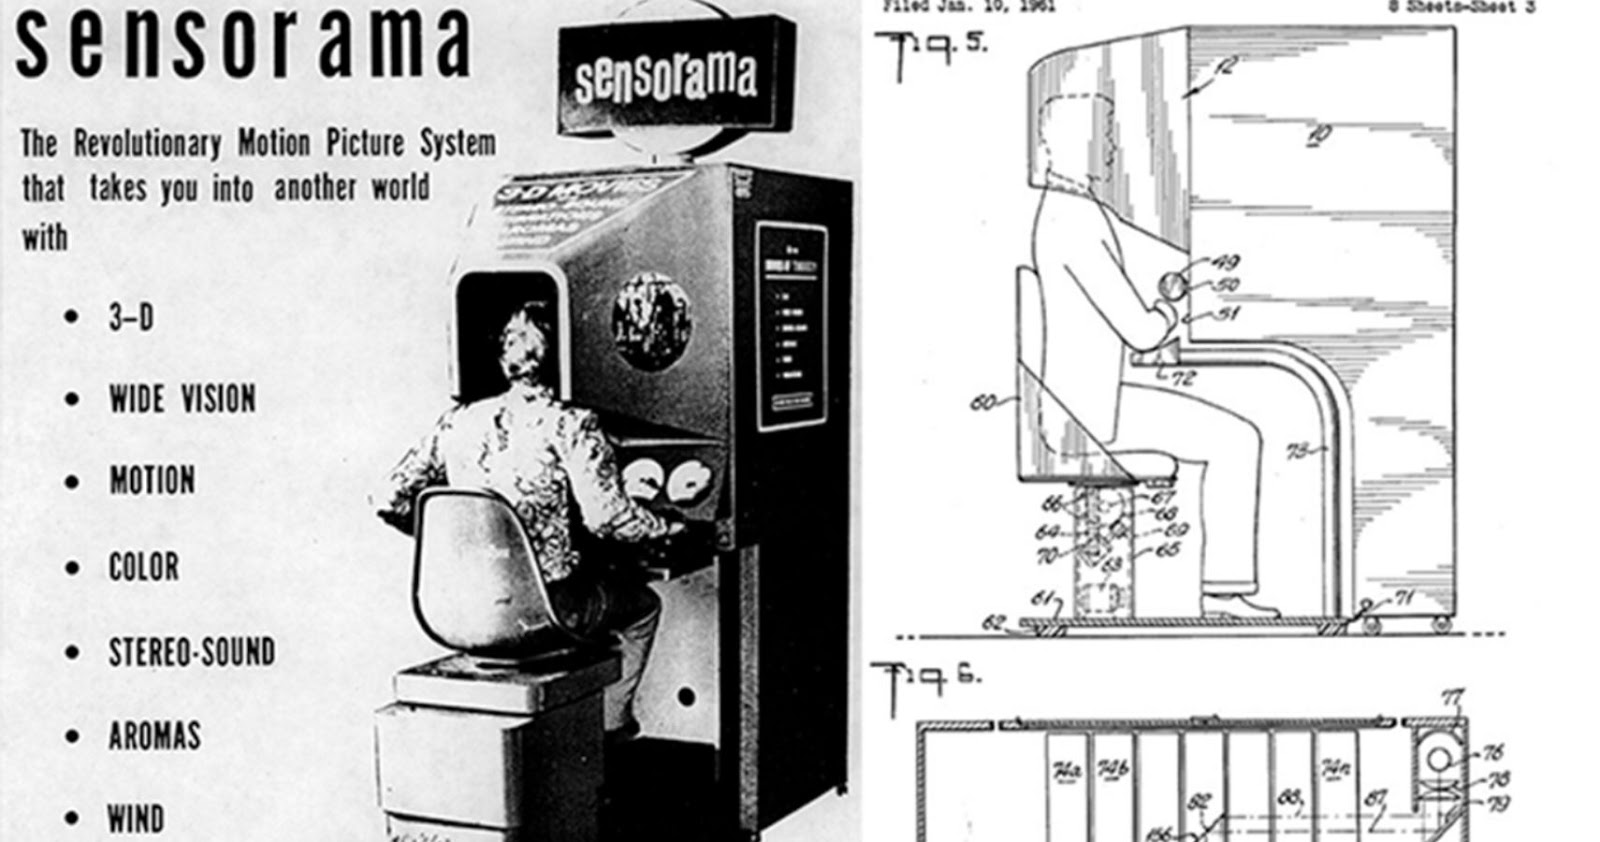 Thiết bị Sensorama của Morton Heilig -Một trong những thiết bị đầu tiên ứng dụng công nghệ VR